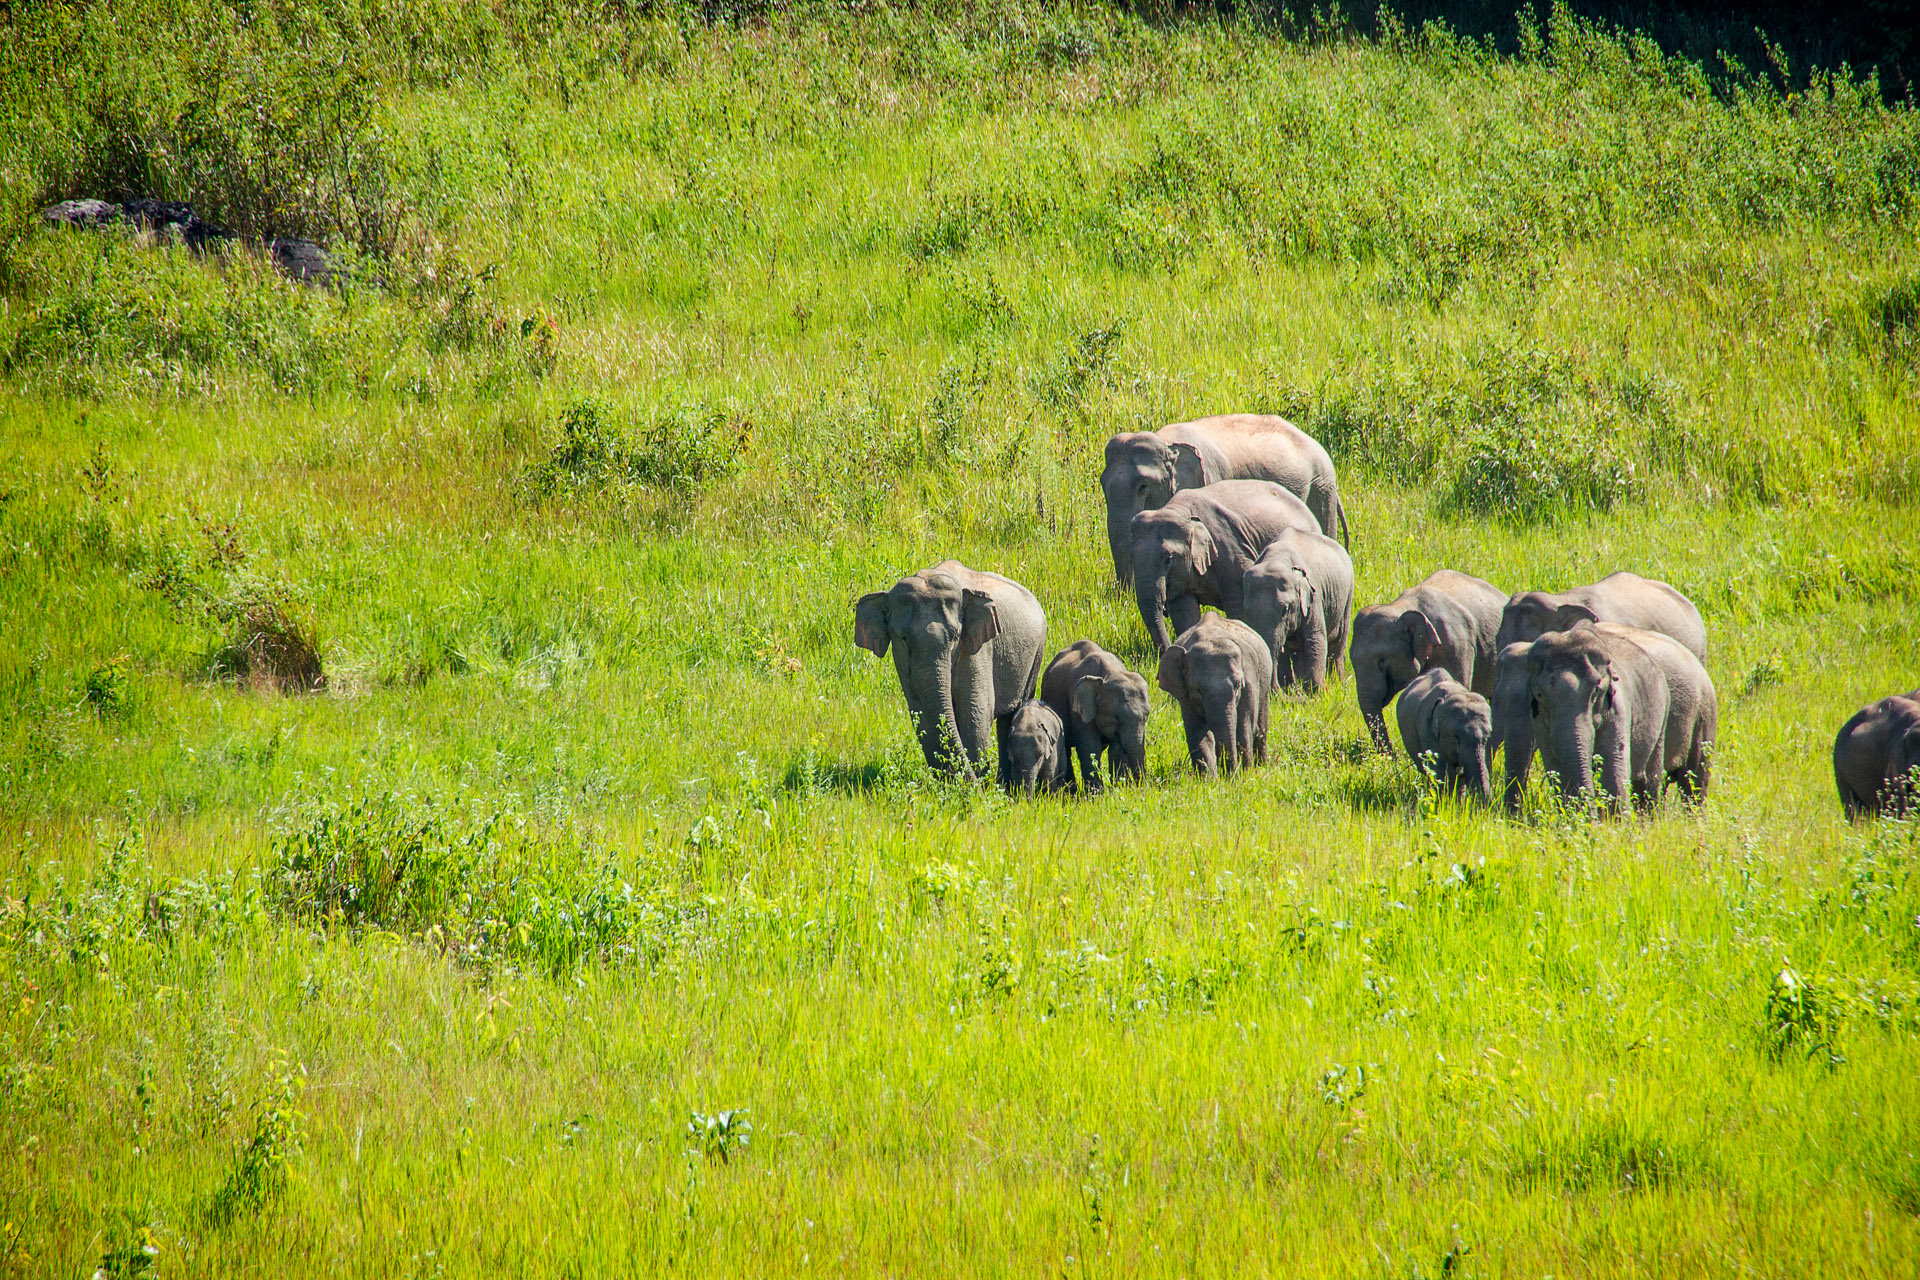 ten elephants in a field in khao yai thailand